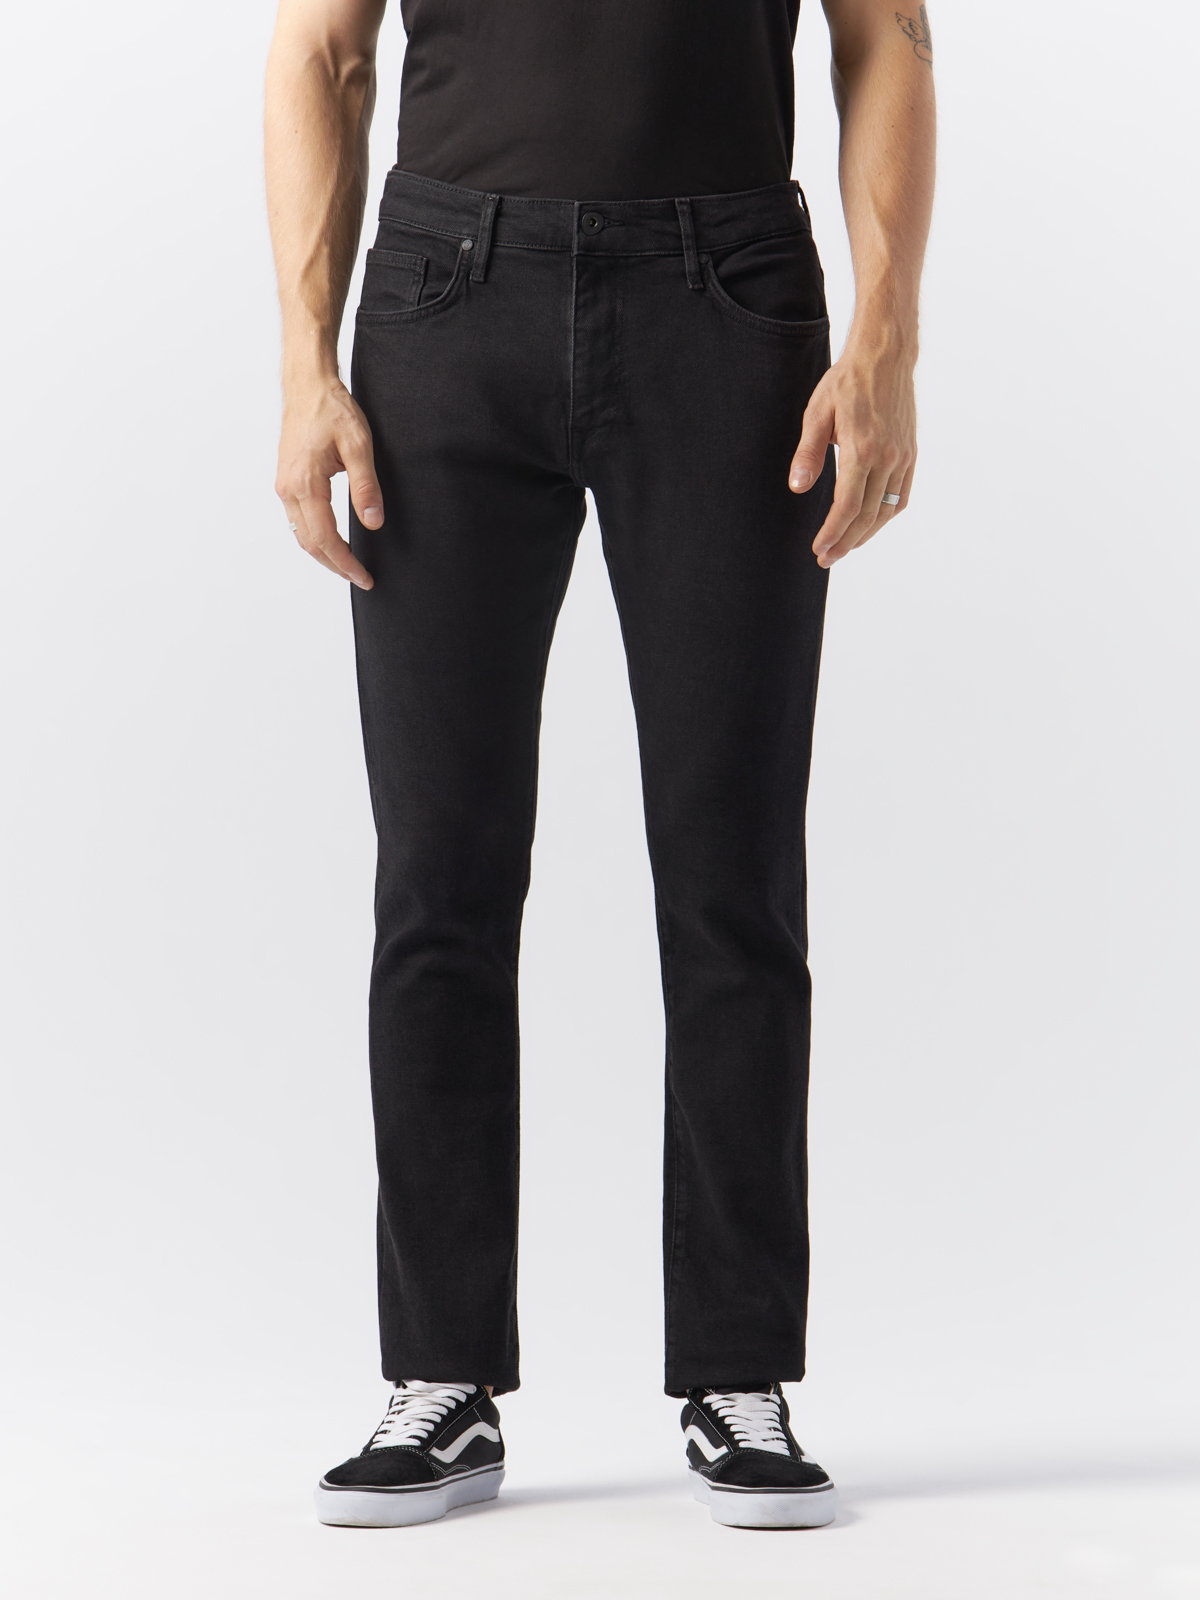 Джинсы Cross Jeans для мужчин, E 185-171, размер 33/32, чёрные